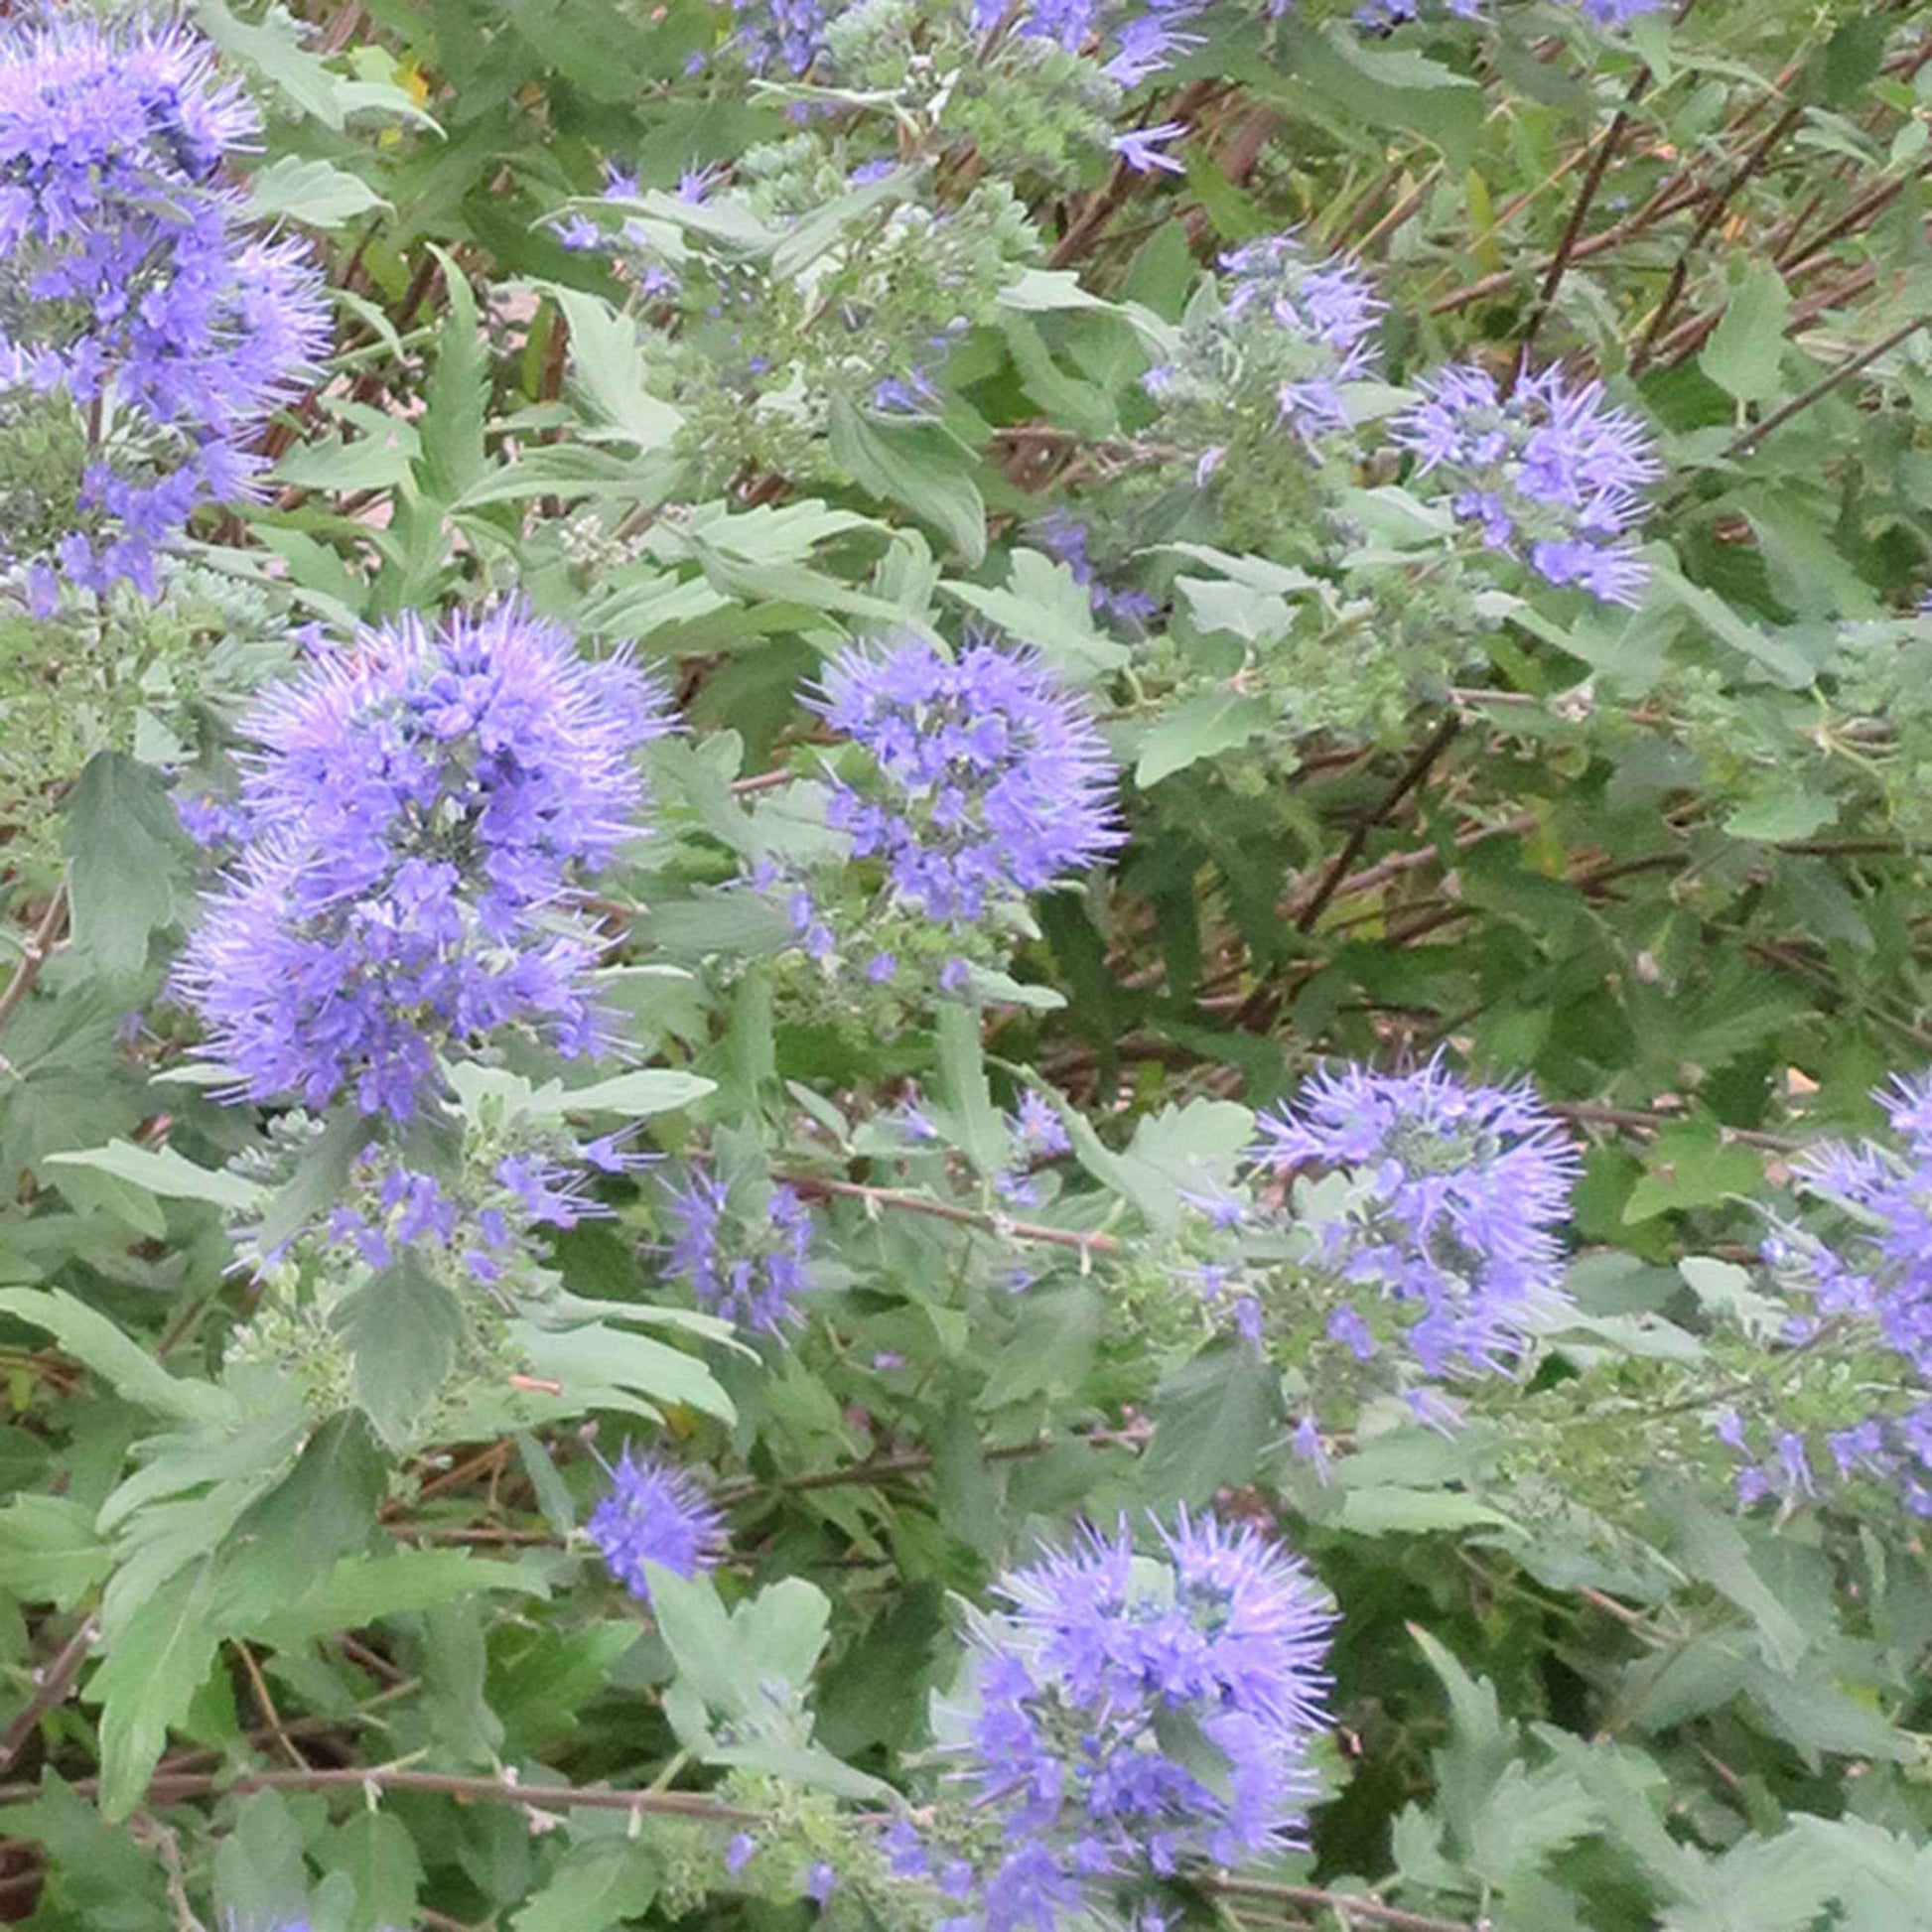 Bartblume 'Heavenly Blue' - Caryopteris clandonensis heavenly blue - Sträucher und Stauden